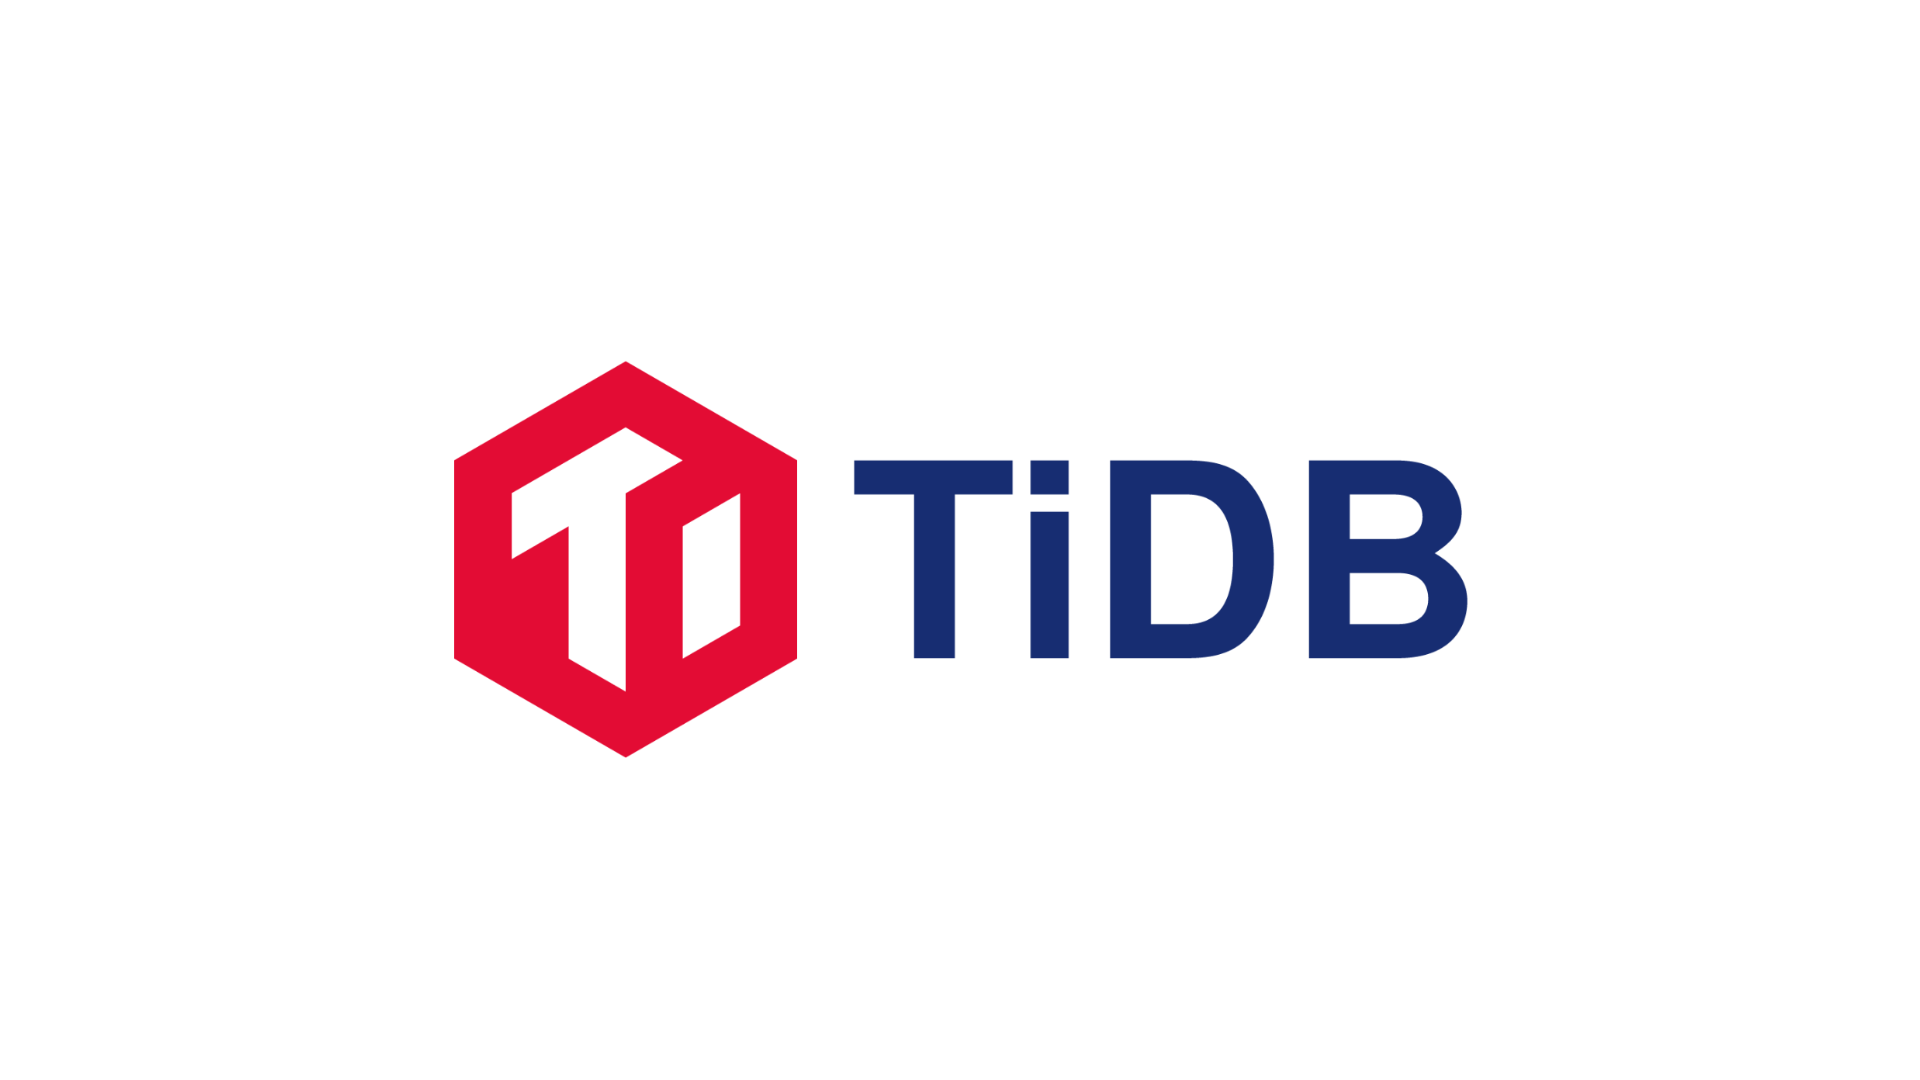 JeecgBoot集成TiDB，打造高效可靠的数据存储解决方案